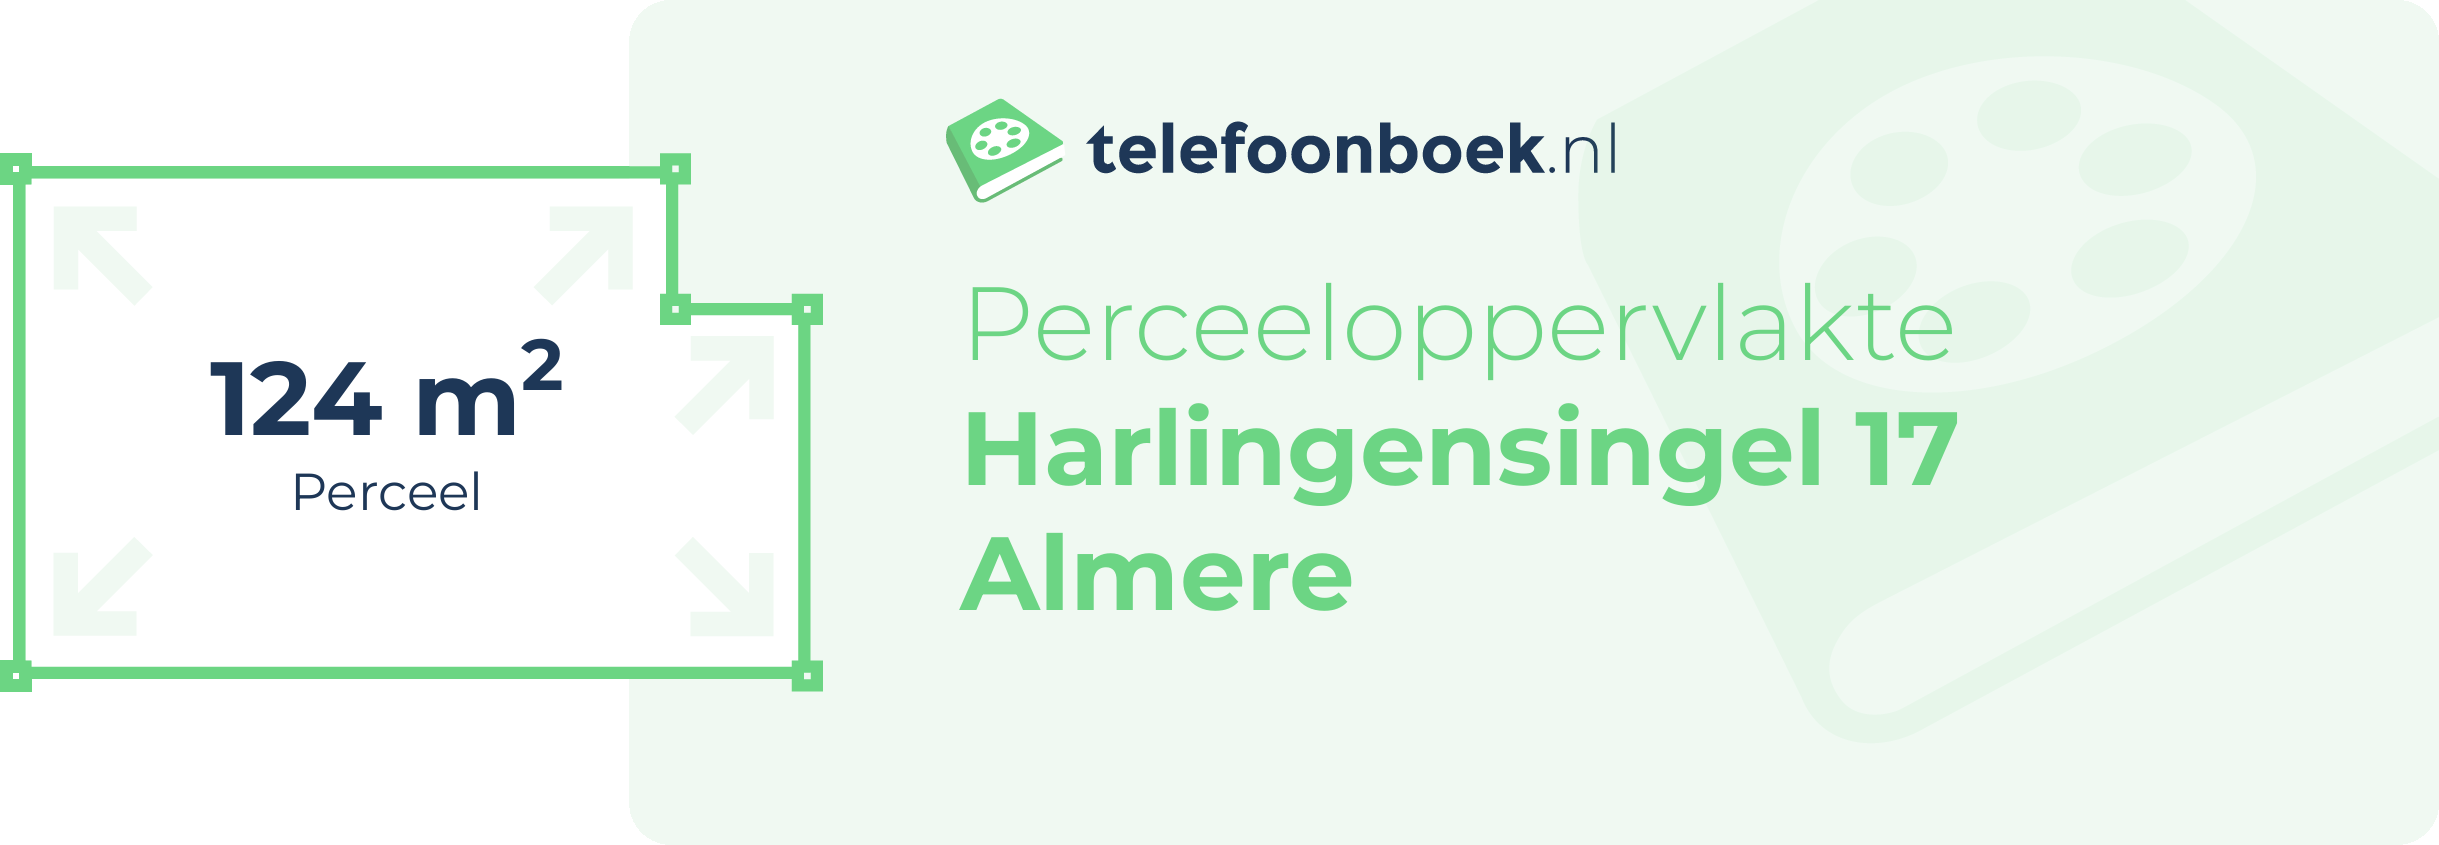 Perceeloppervlakte Harlingensingel 17 Almere